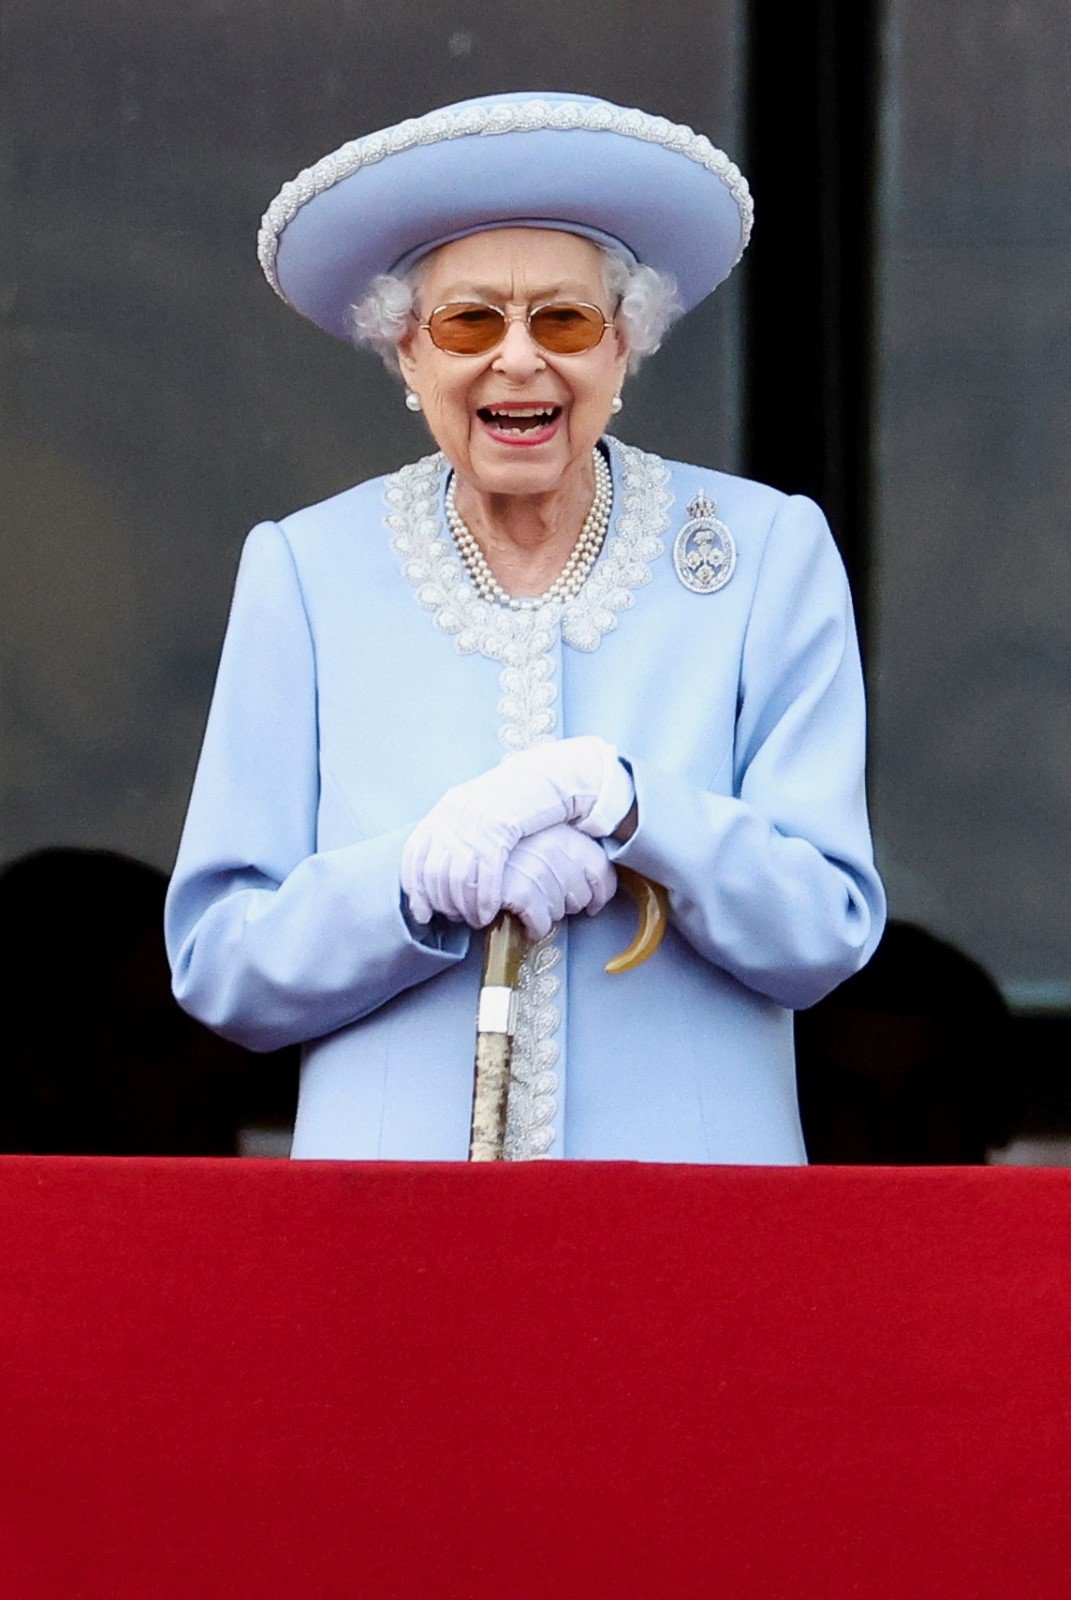 Oslavy královského jubilea: Královna Alžběta